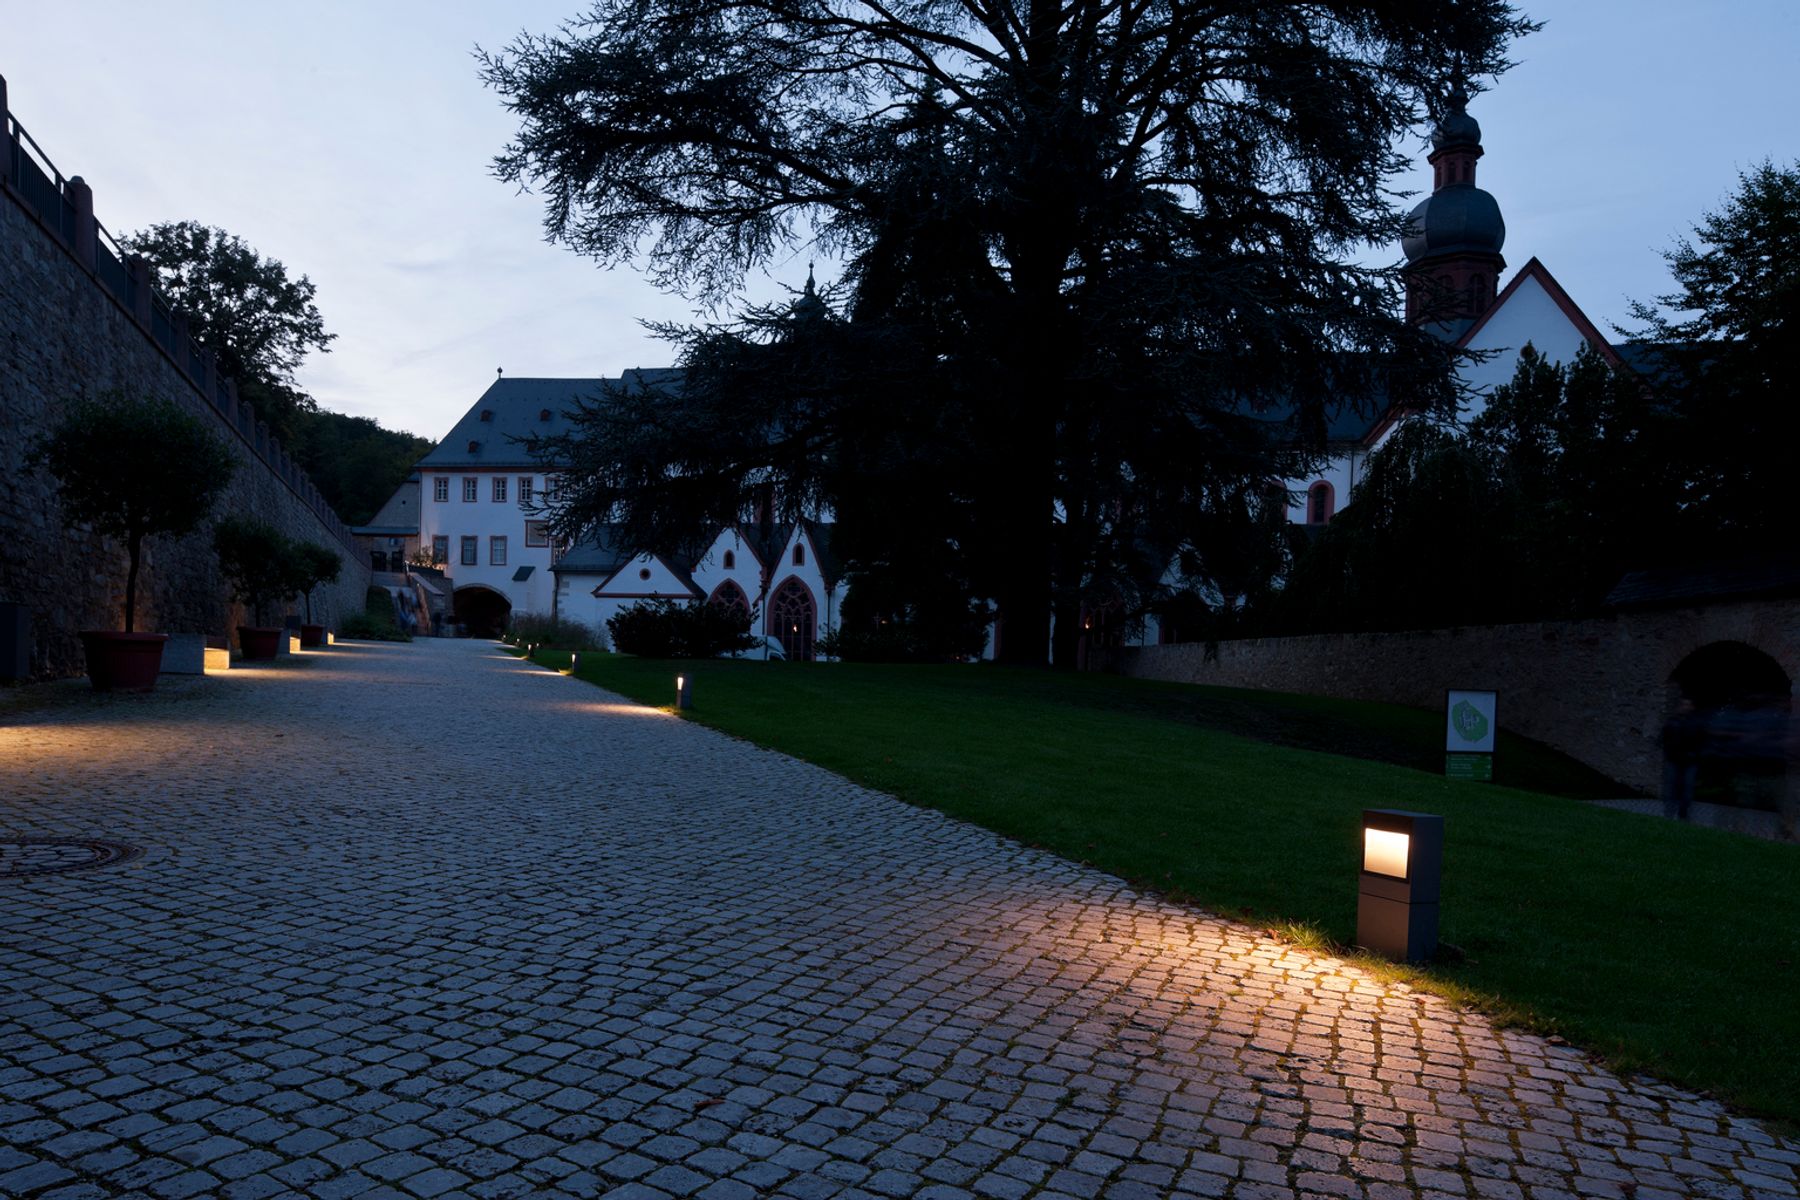 Eberbach monastery, Eltville. Architect: Rimpl + Flacht Architekten, Wiesbaden. Lighting design: Ing. Bamberger, Pfünz.